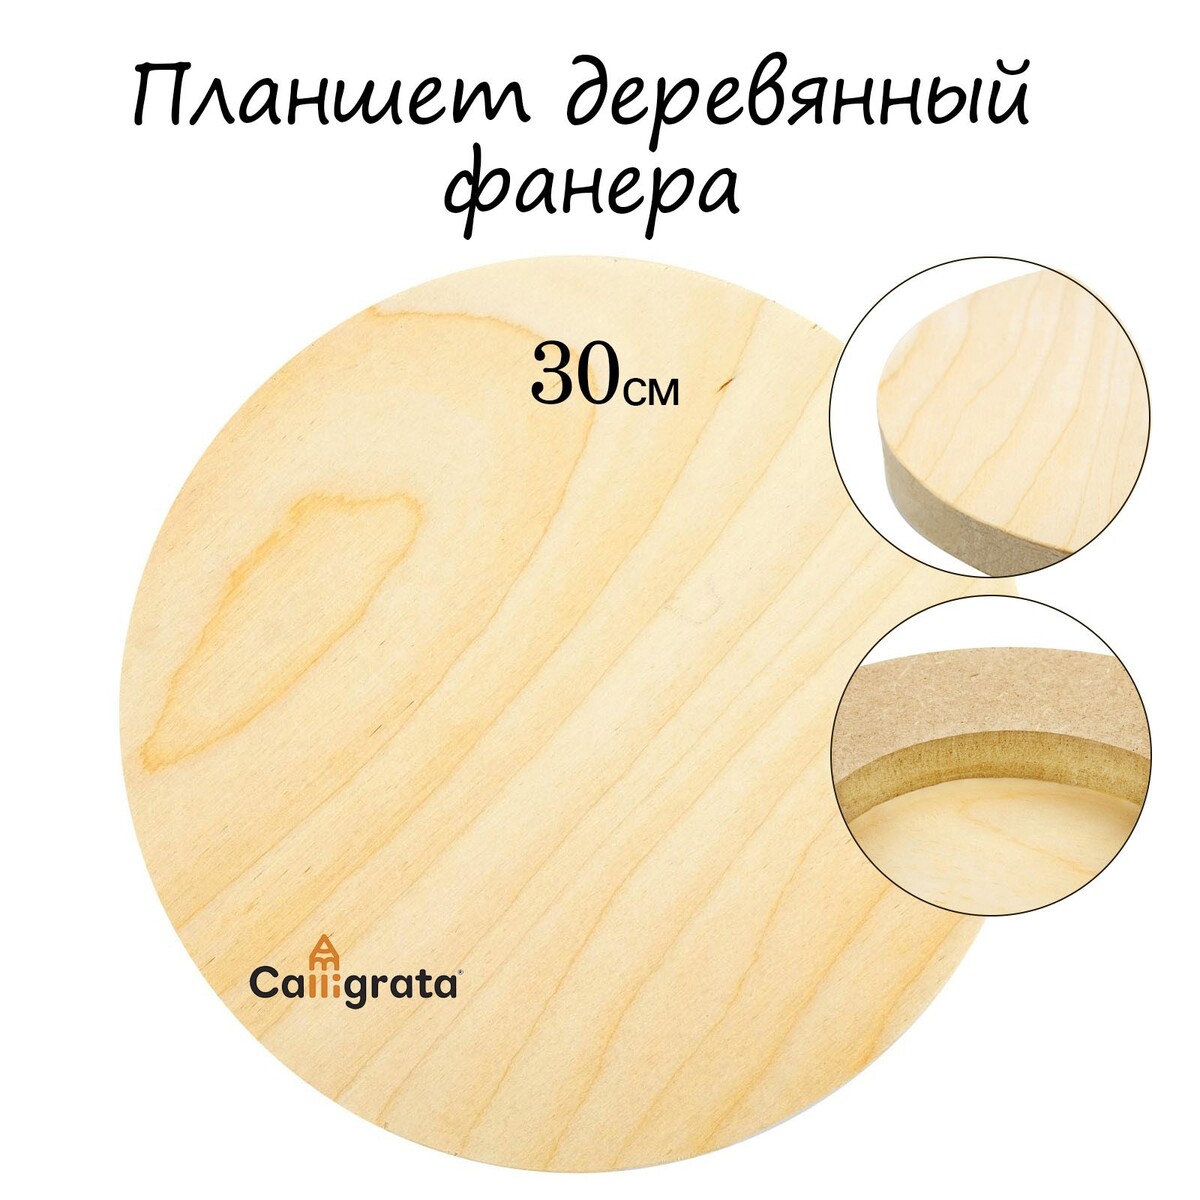 Планшет круглый деревянный фанера d-30 х 2 см, сосна, calligrata